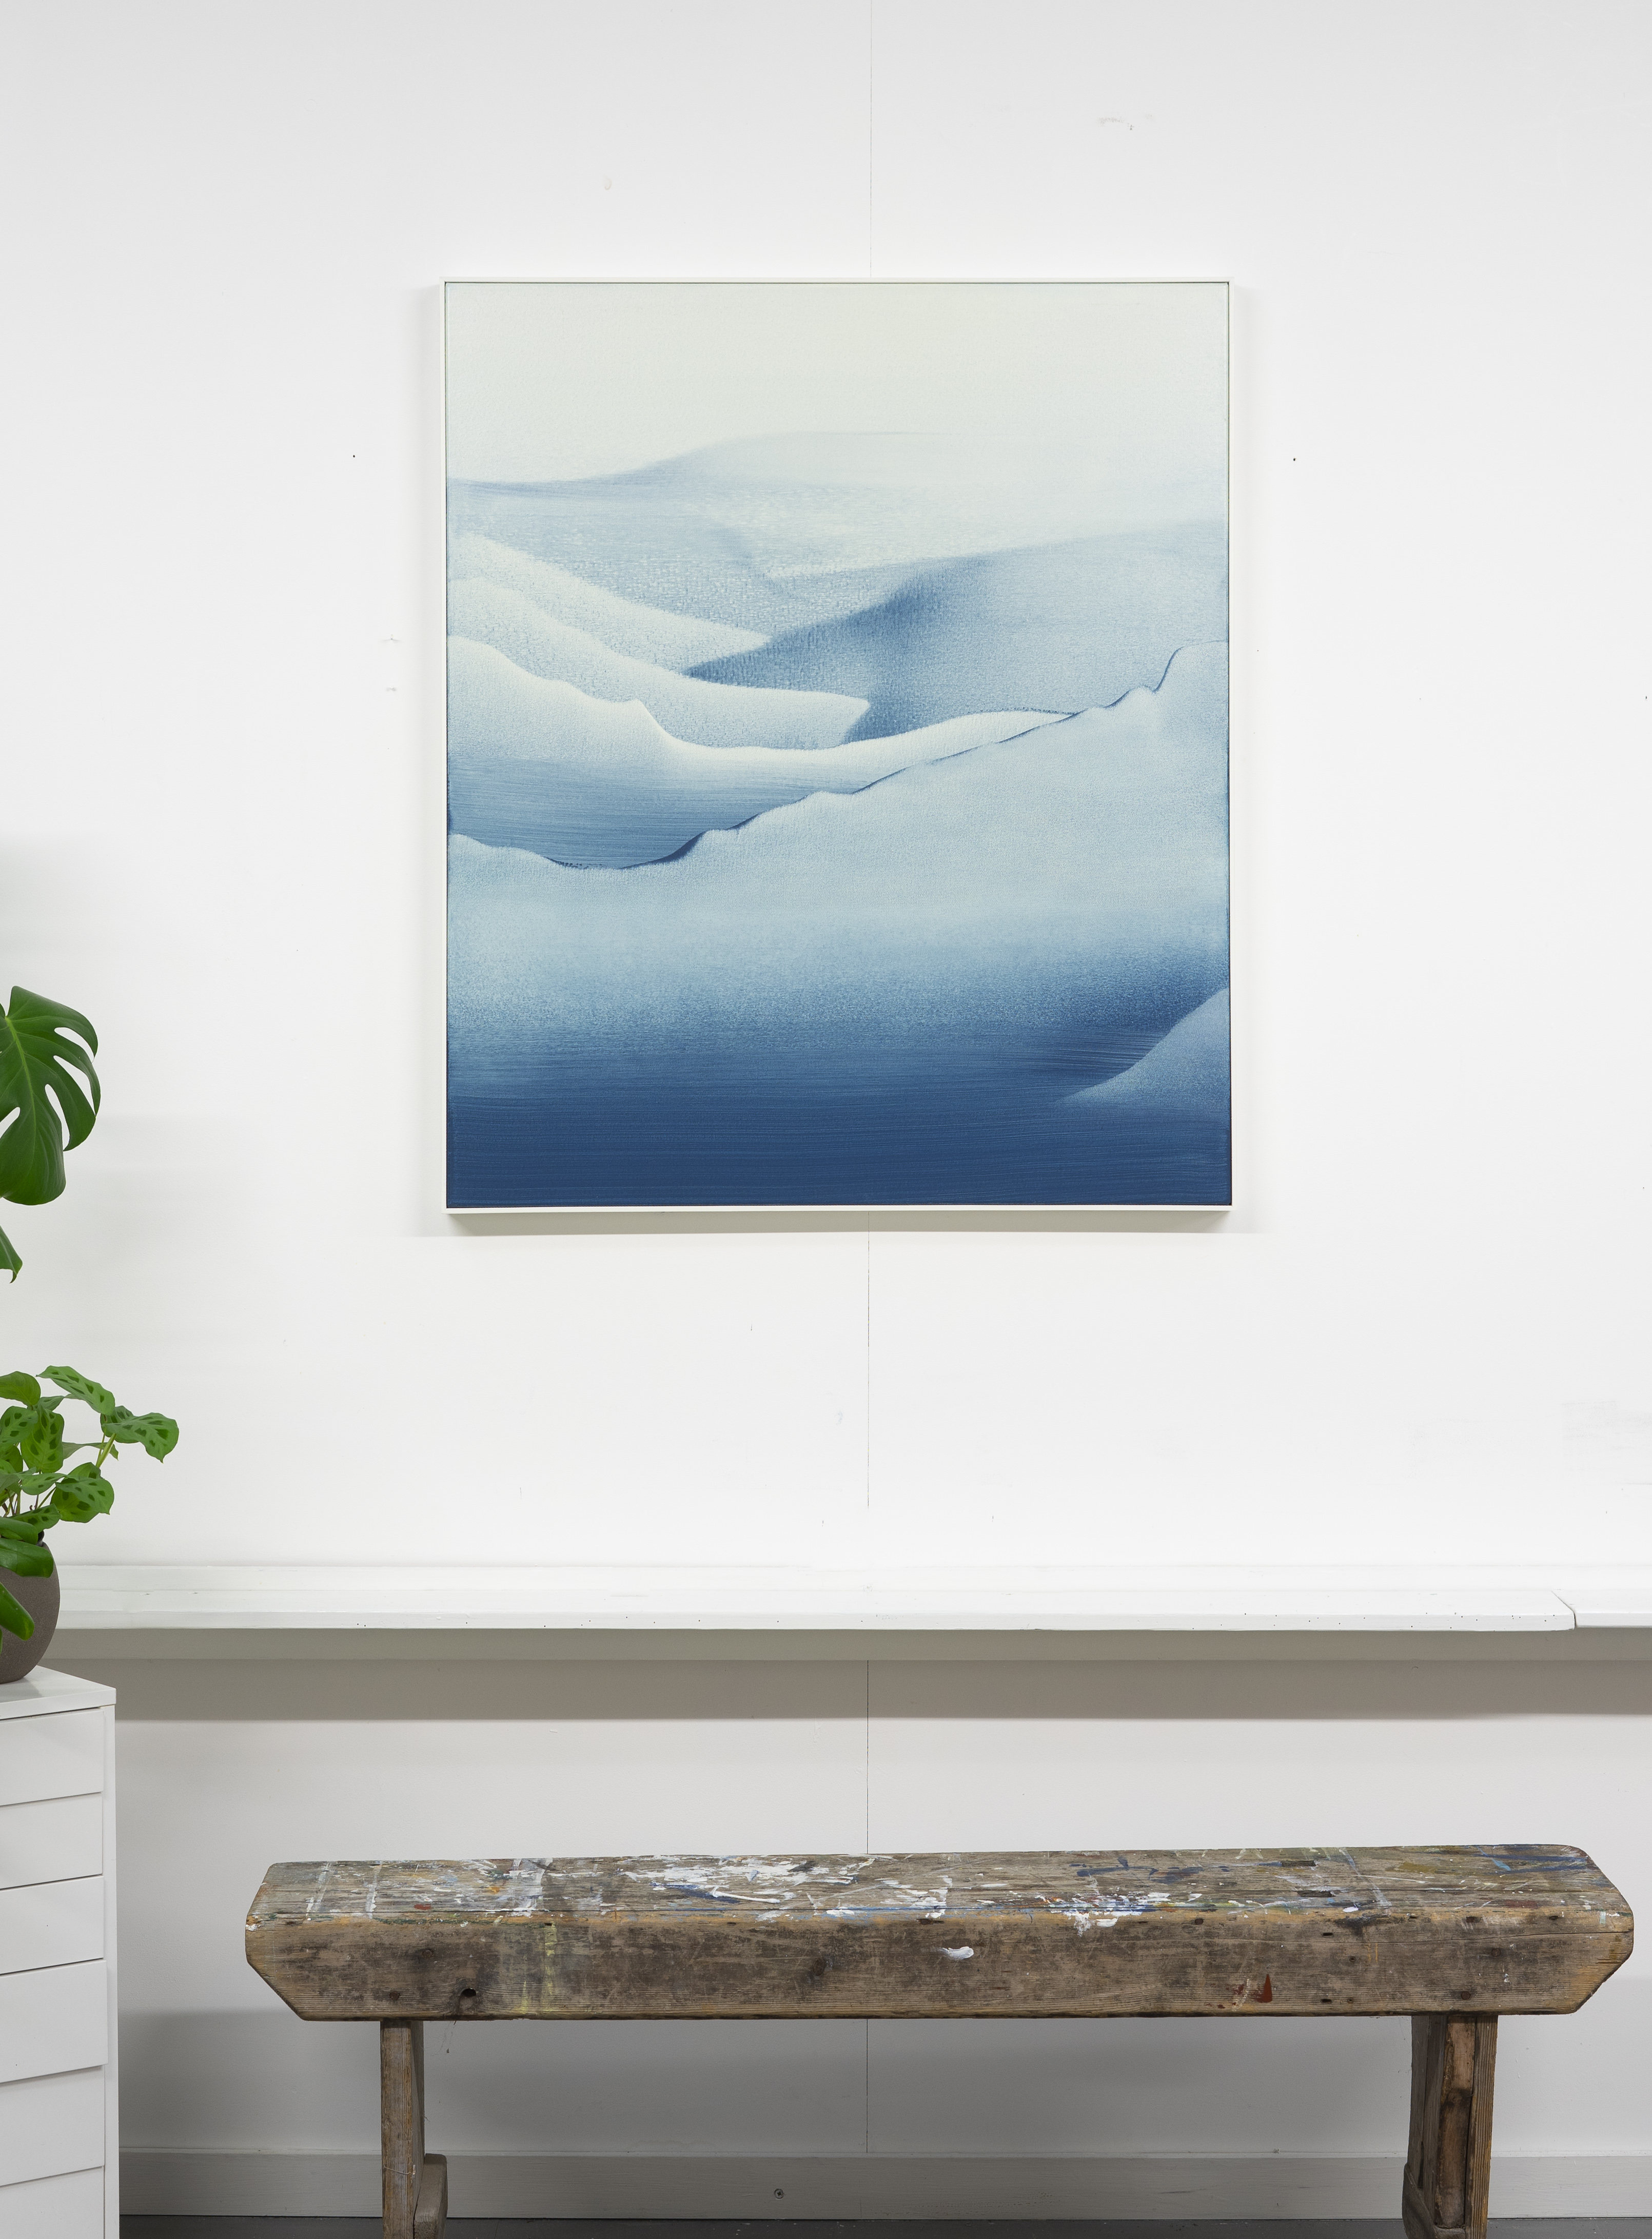 Snow blanket - studio view